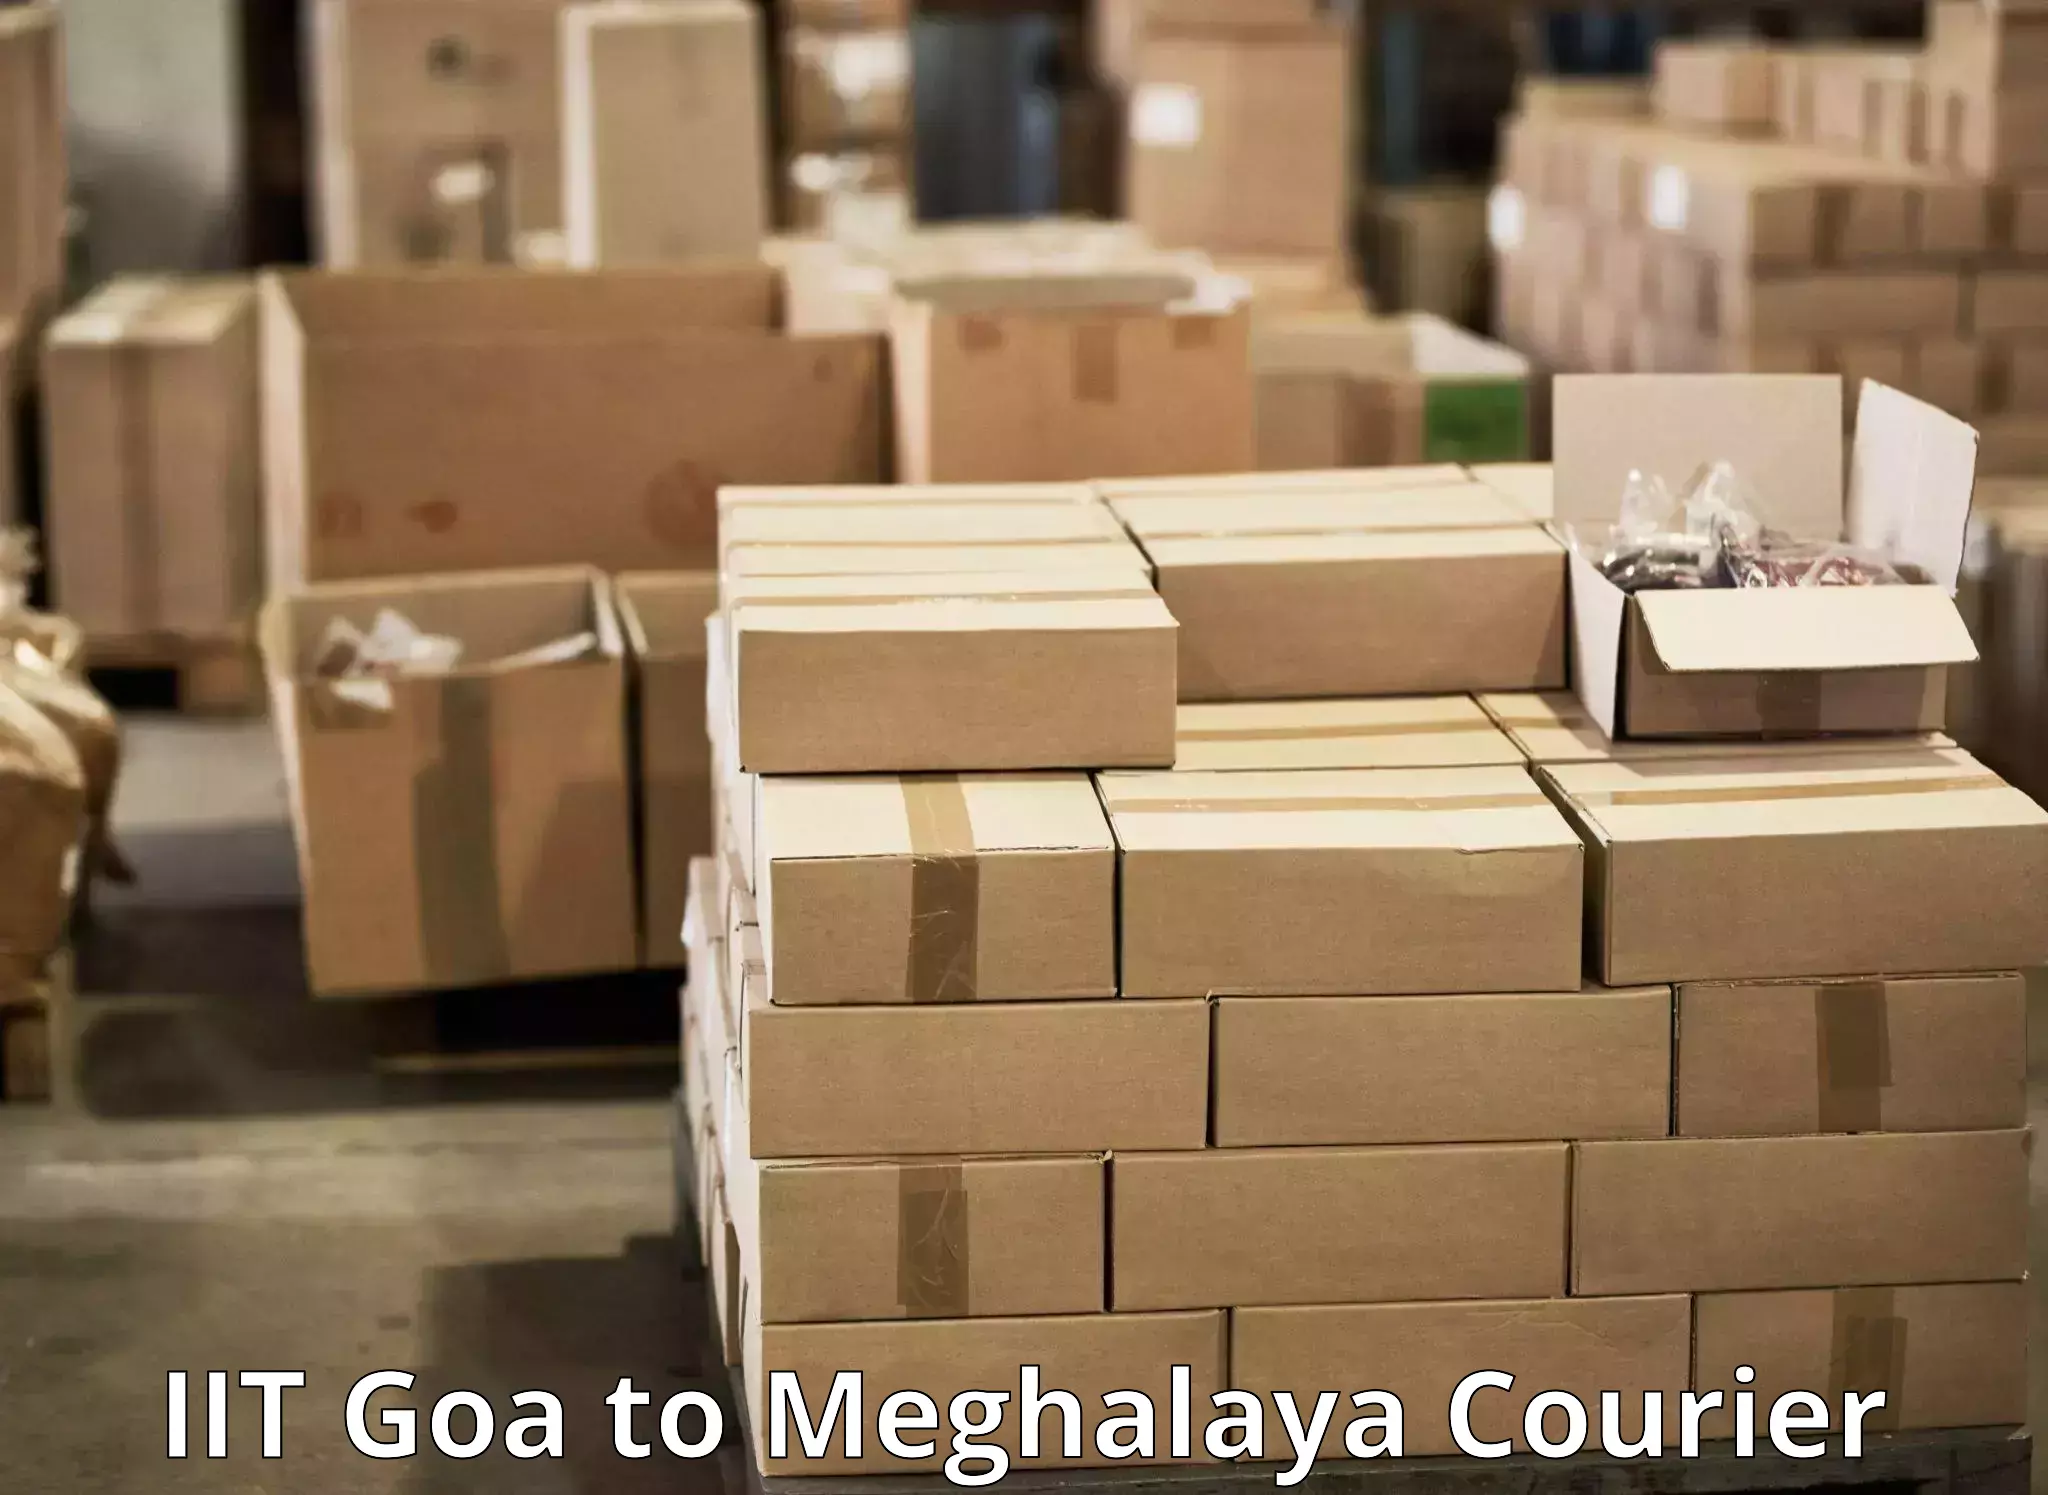 Nationwide delivery network IIT Goa to Meghalaya